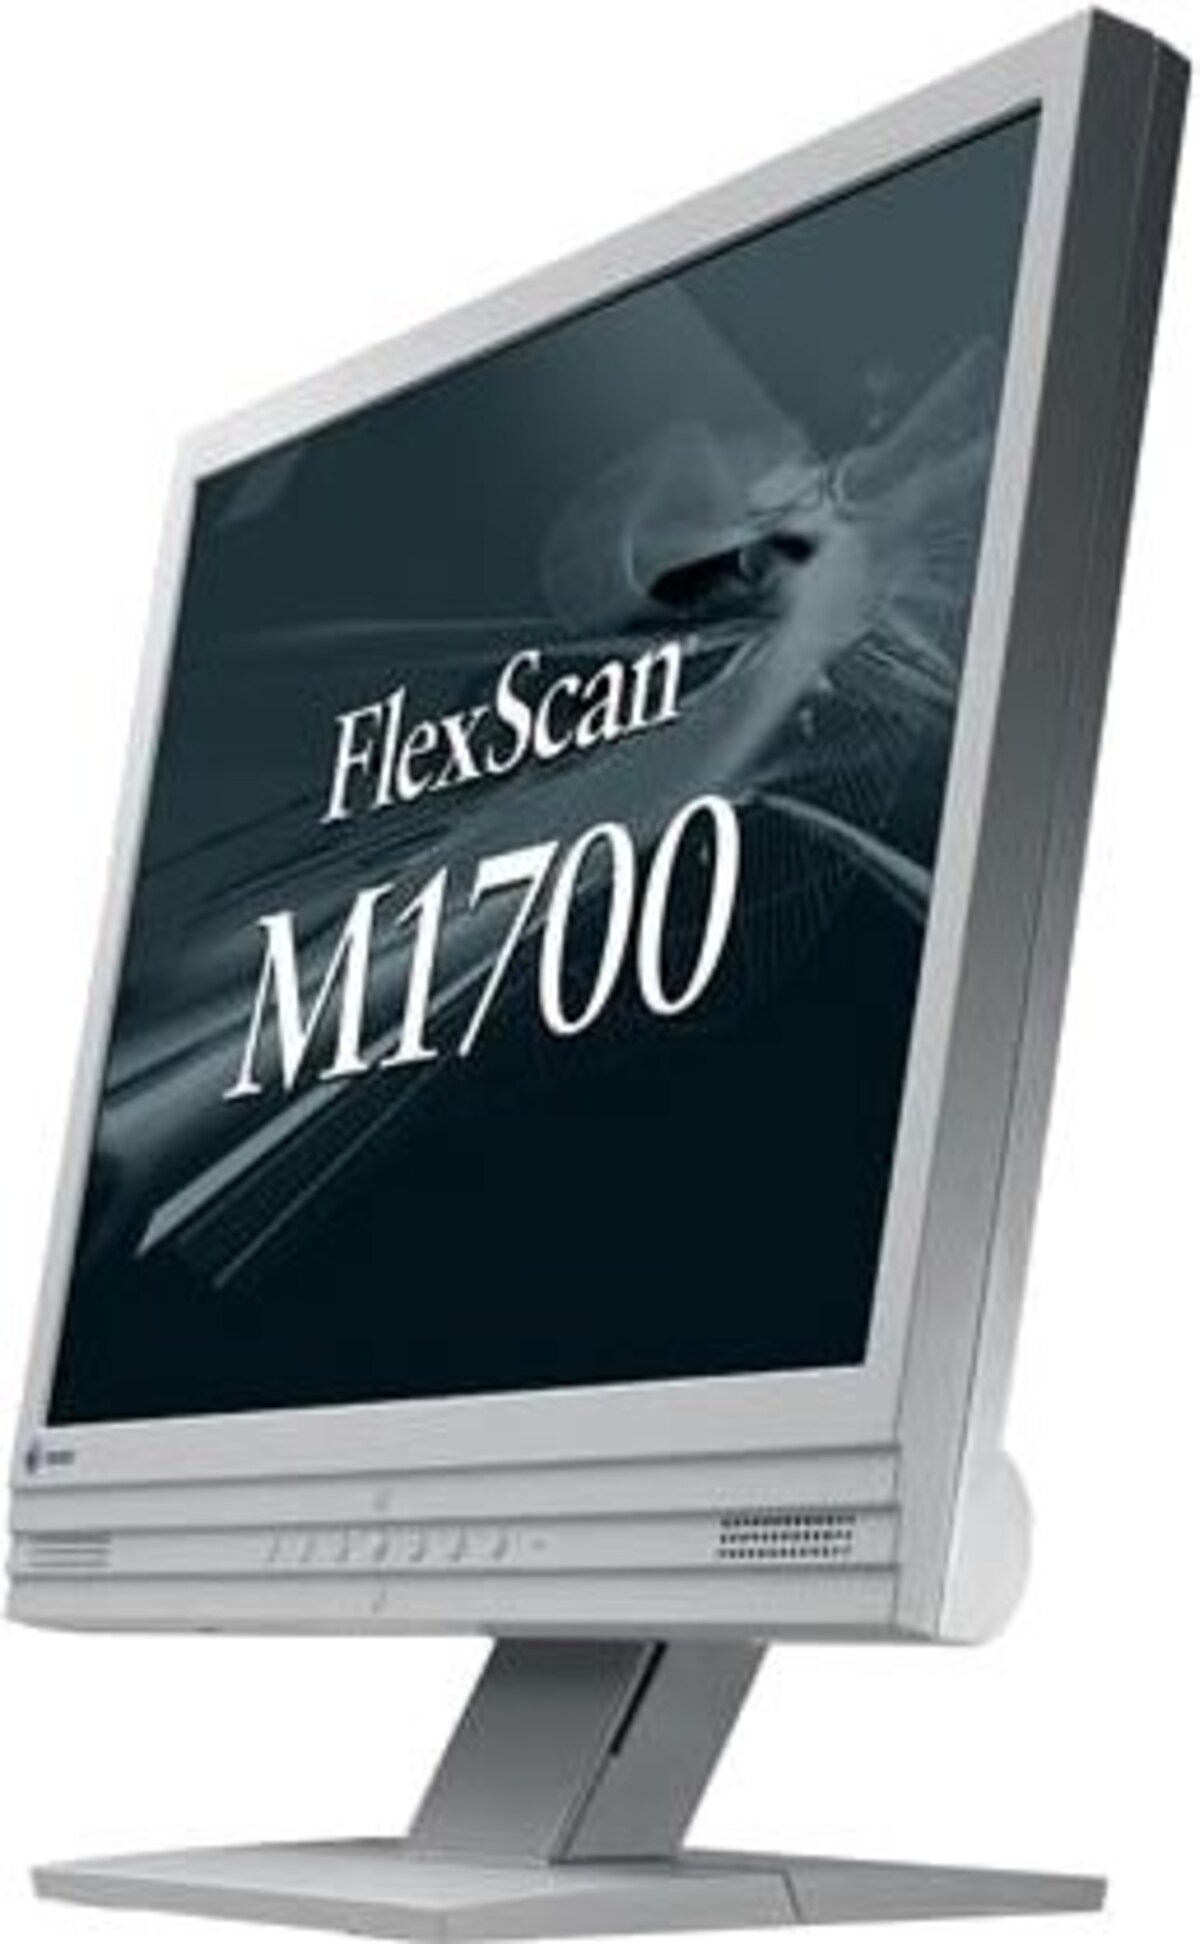 NANAO FlexScan M1700 17インチ液晶ディスプレイ M1700-RGY セーレングレイ